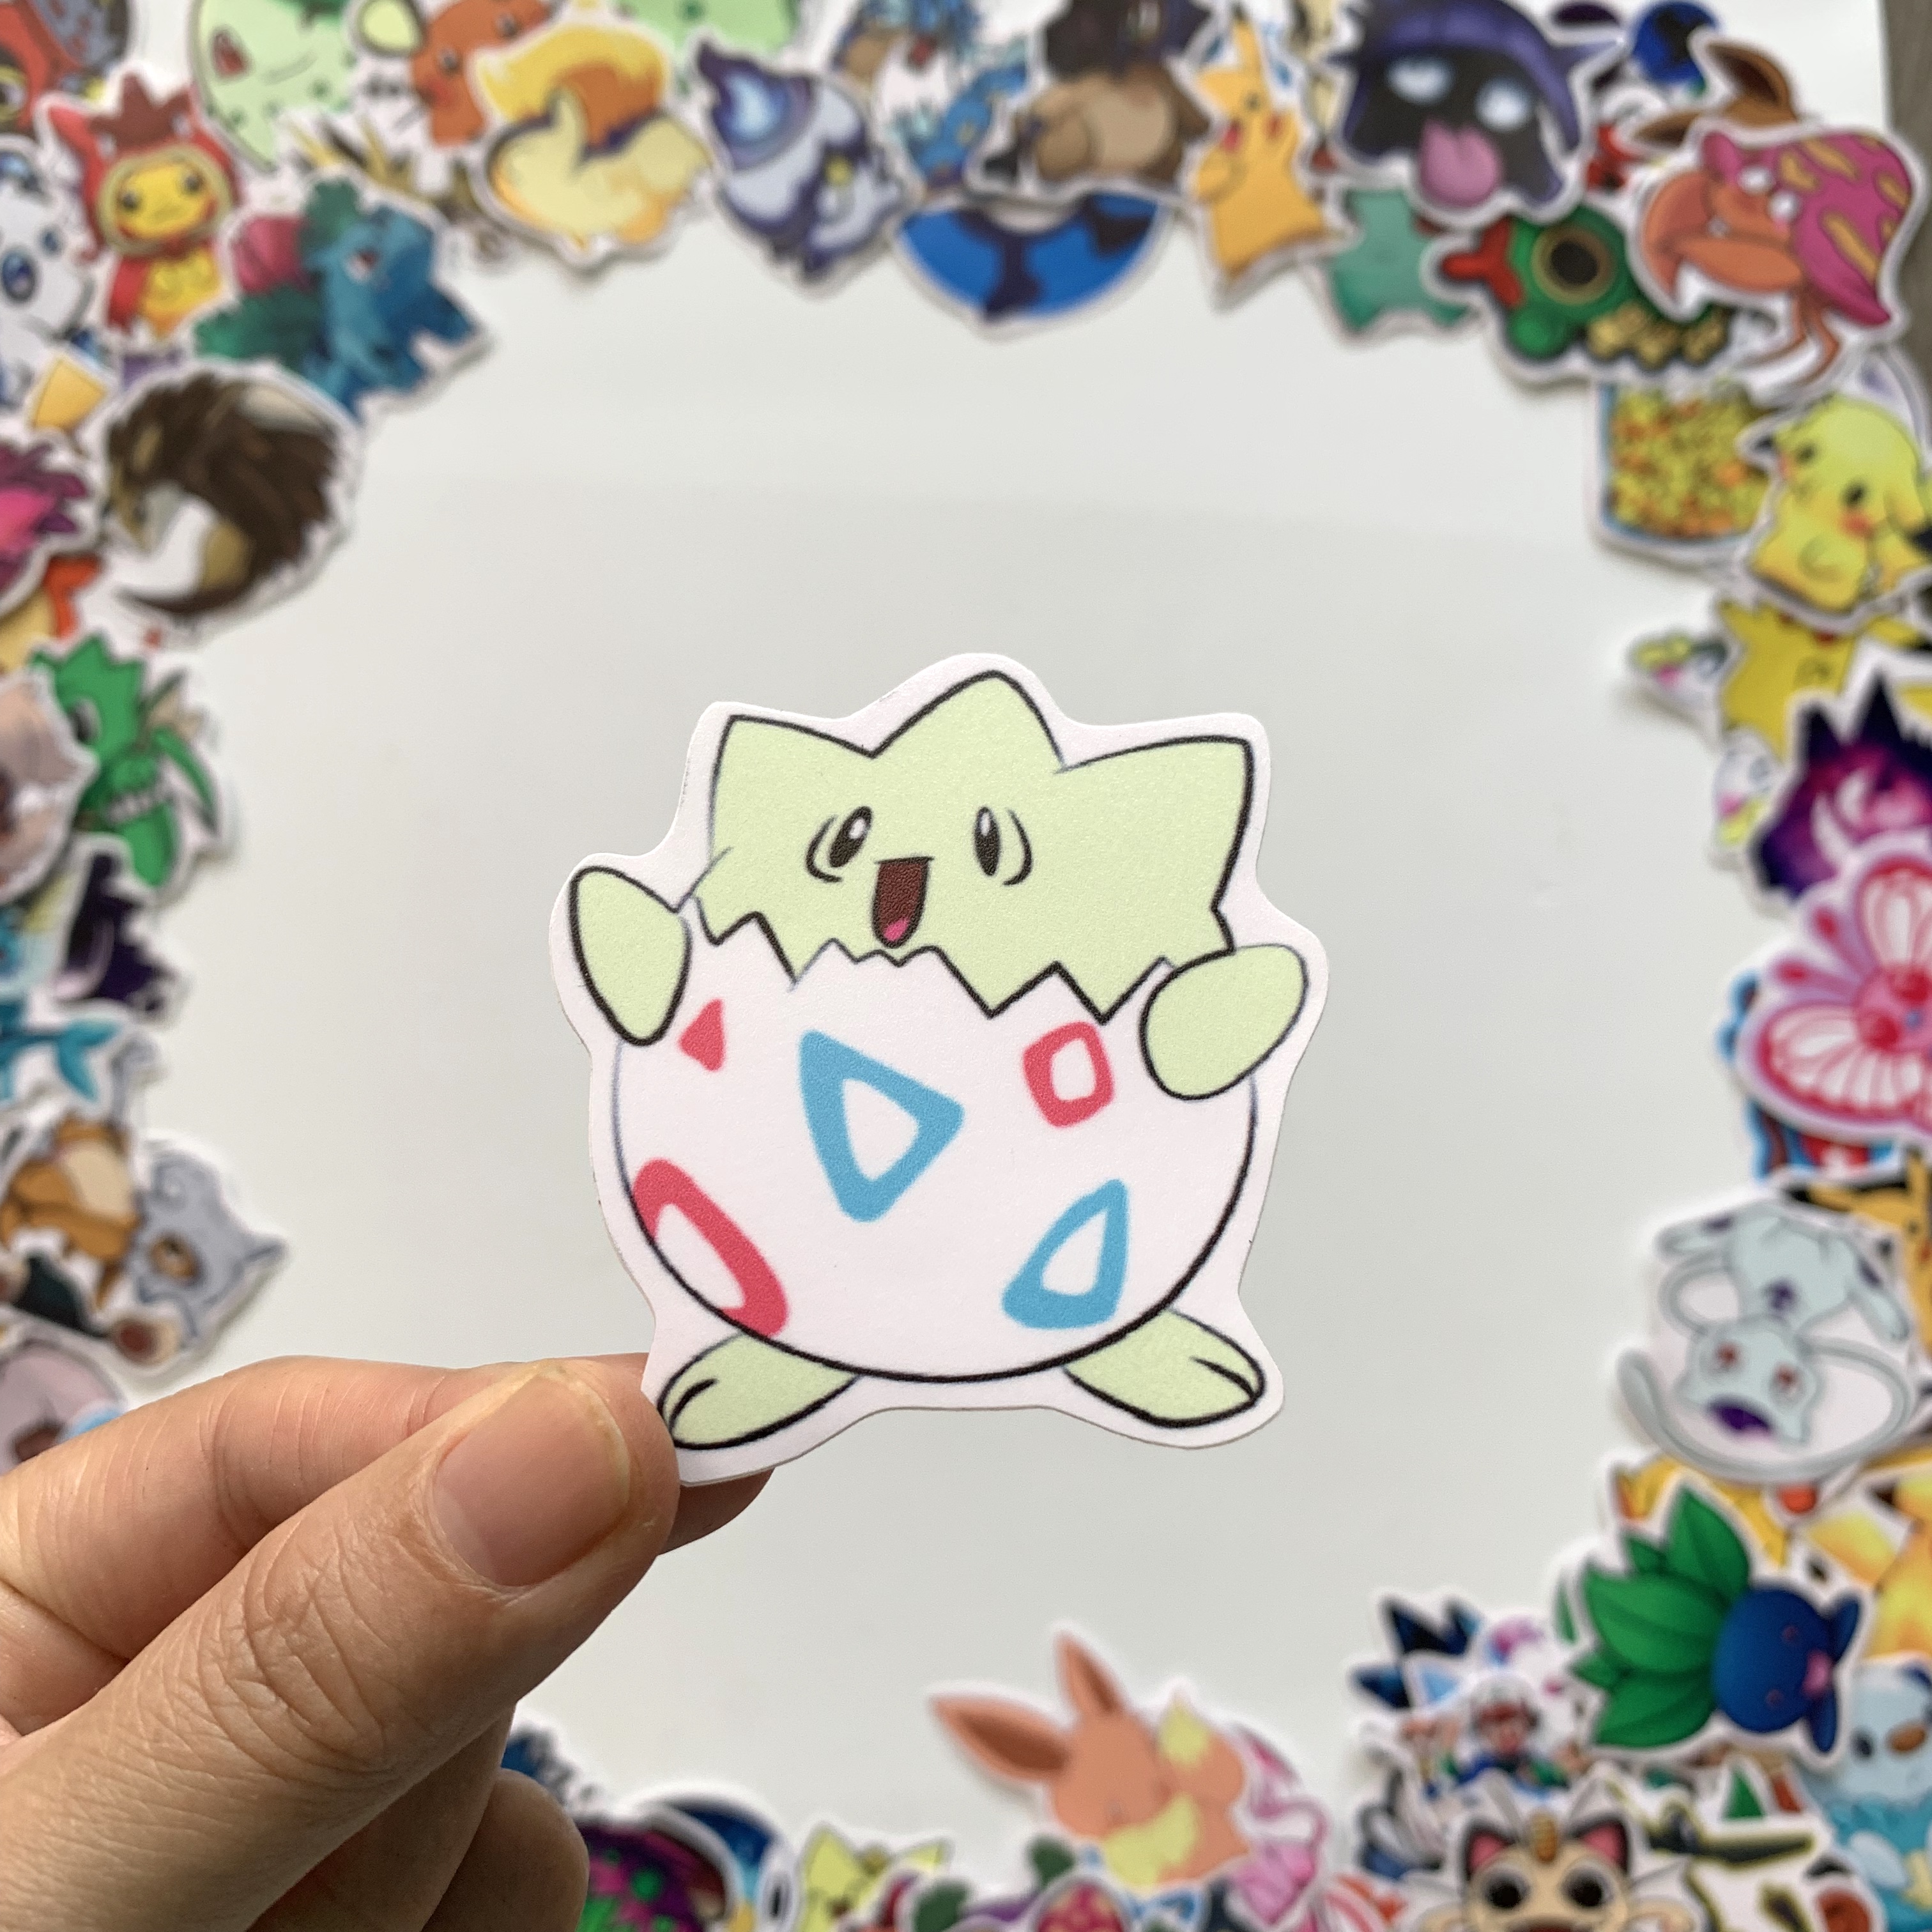 Sticker Pokemon - Dán Trang Trí - Chất Liệu PVC Cán Màng Chất Lượng Cao Chống Nước, Chống Nắng, Không Bong Tróc Phai Màu